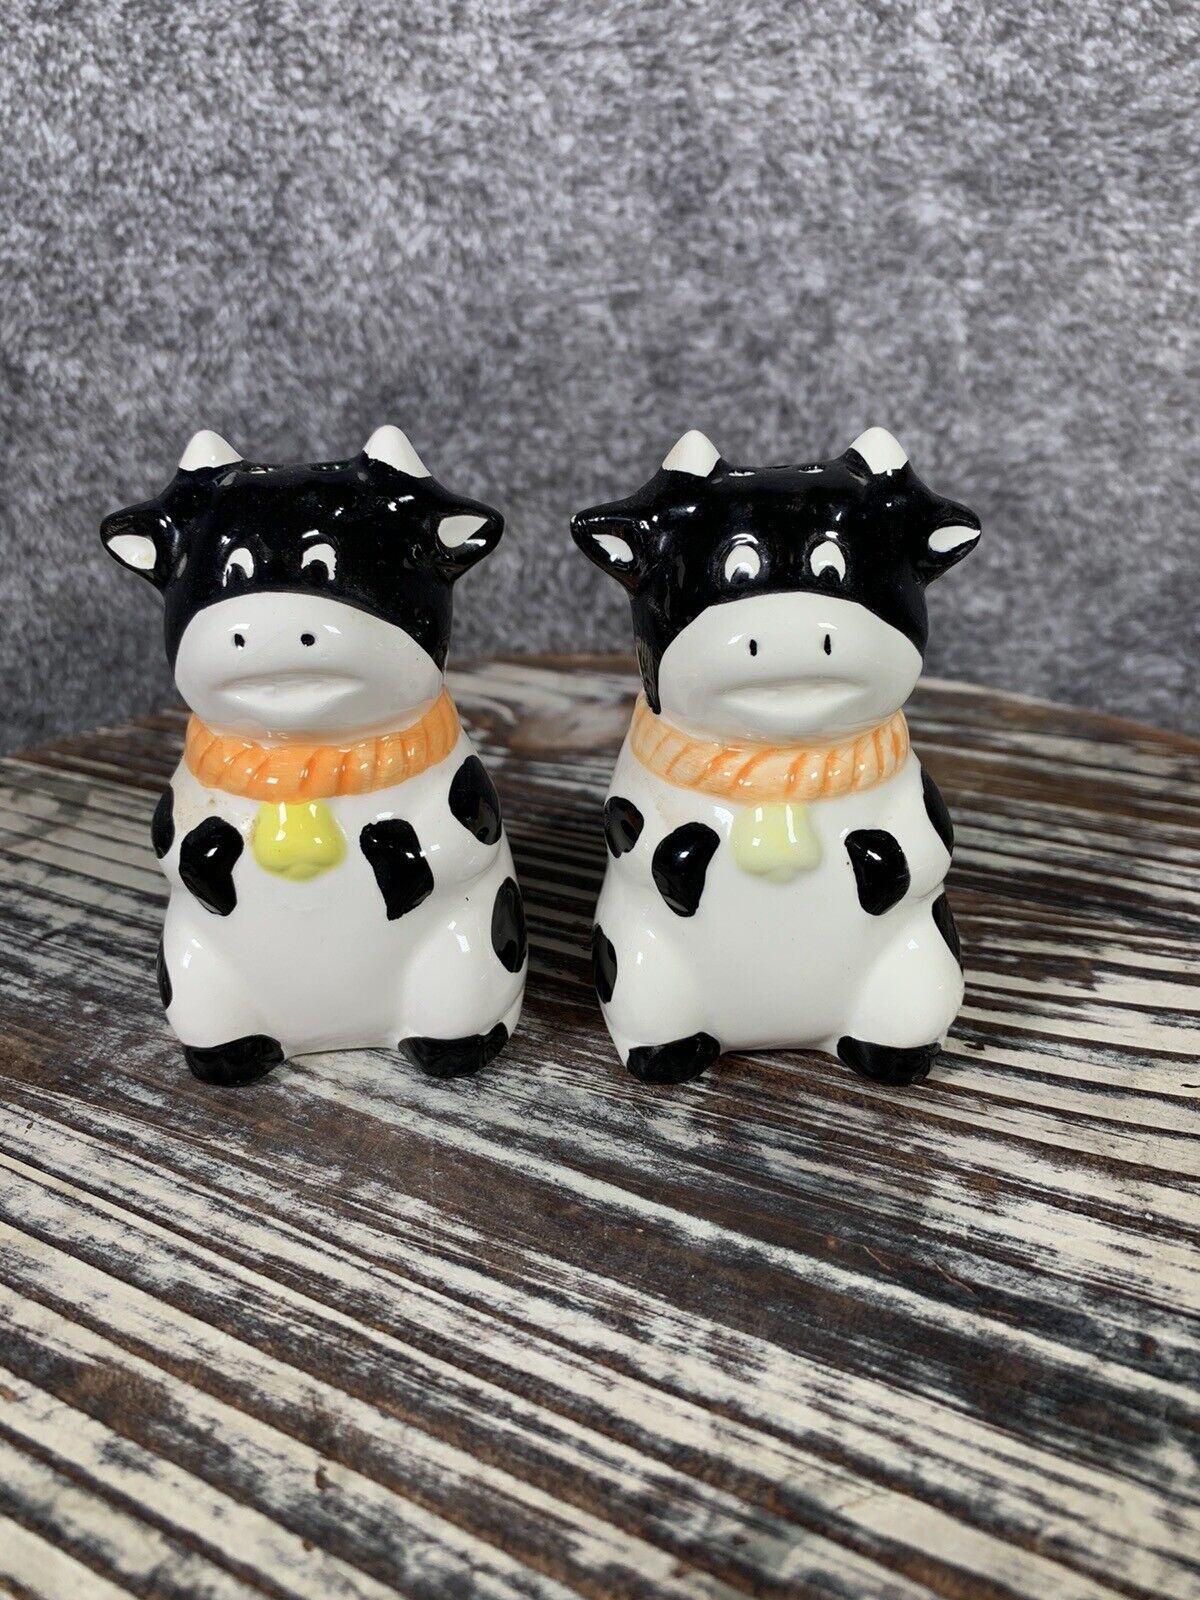 KMC Salt & Pepper Shakers Ceramic Cows